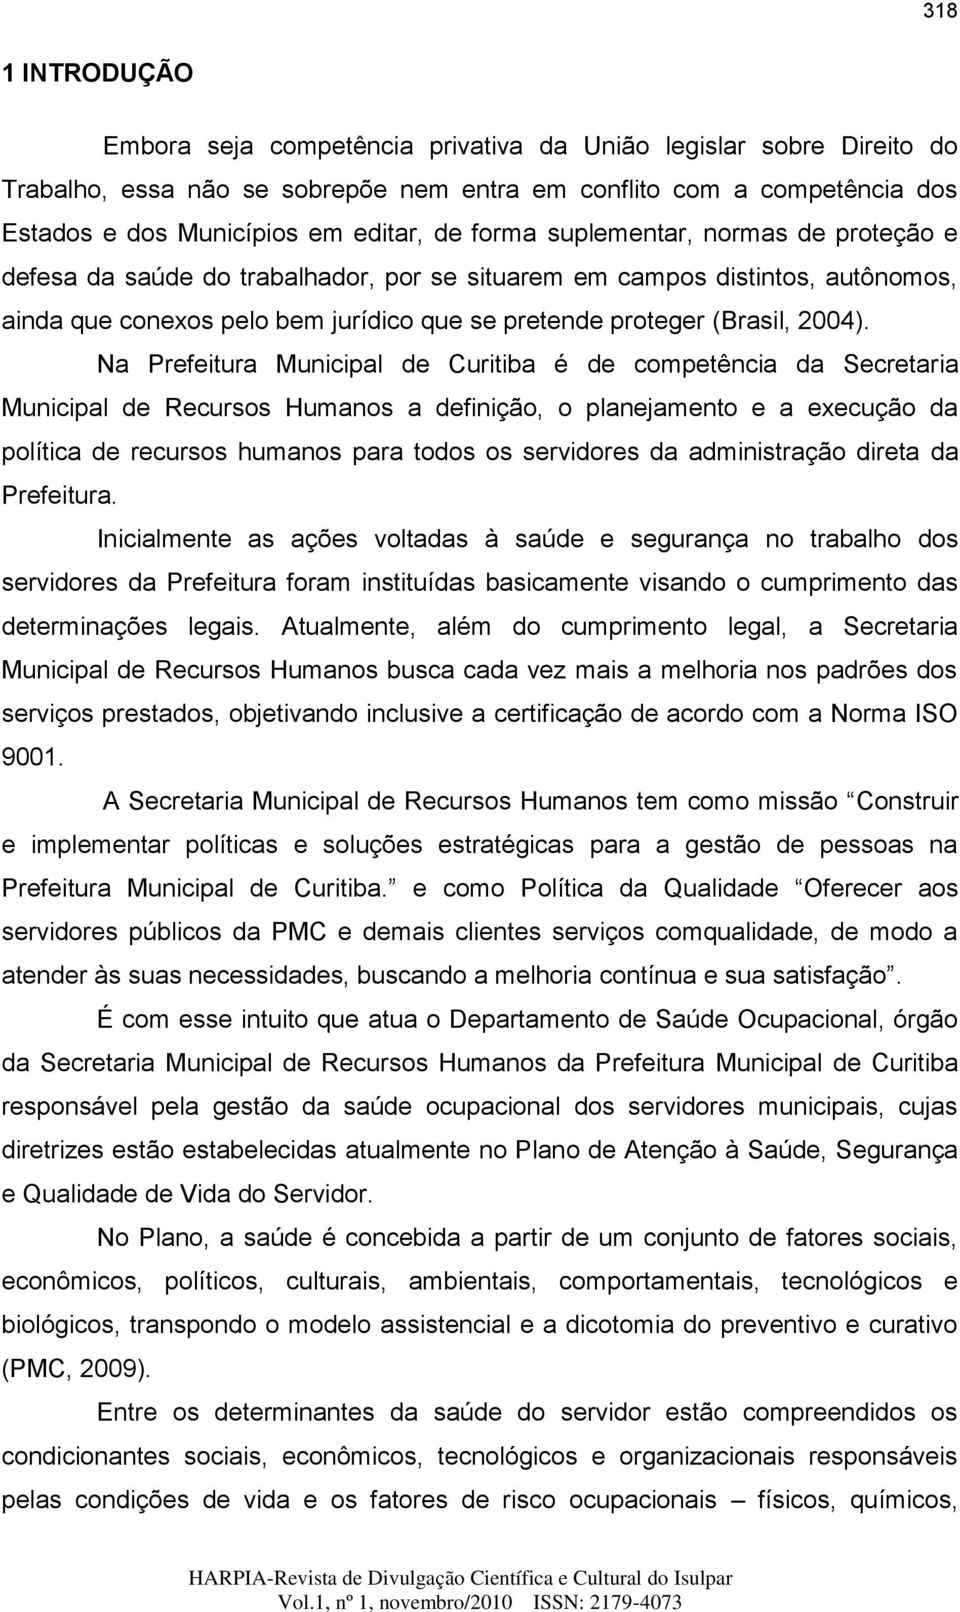 Na Prefeitura Municipal de Curitiba é de competência da Secretaria Municipal de Recursos Humanos a definição, o planejamento e a execução da política de recursos humanos para todos os servidores da